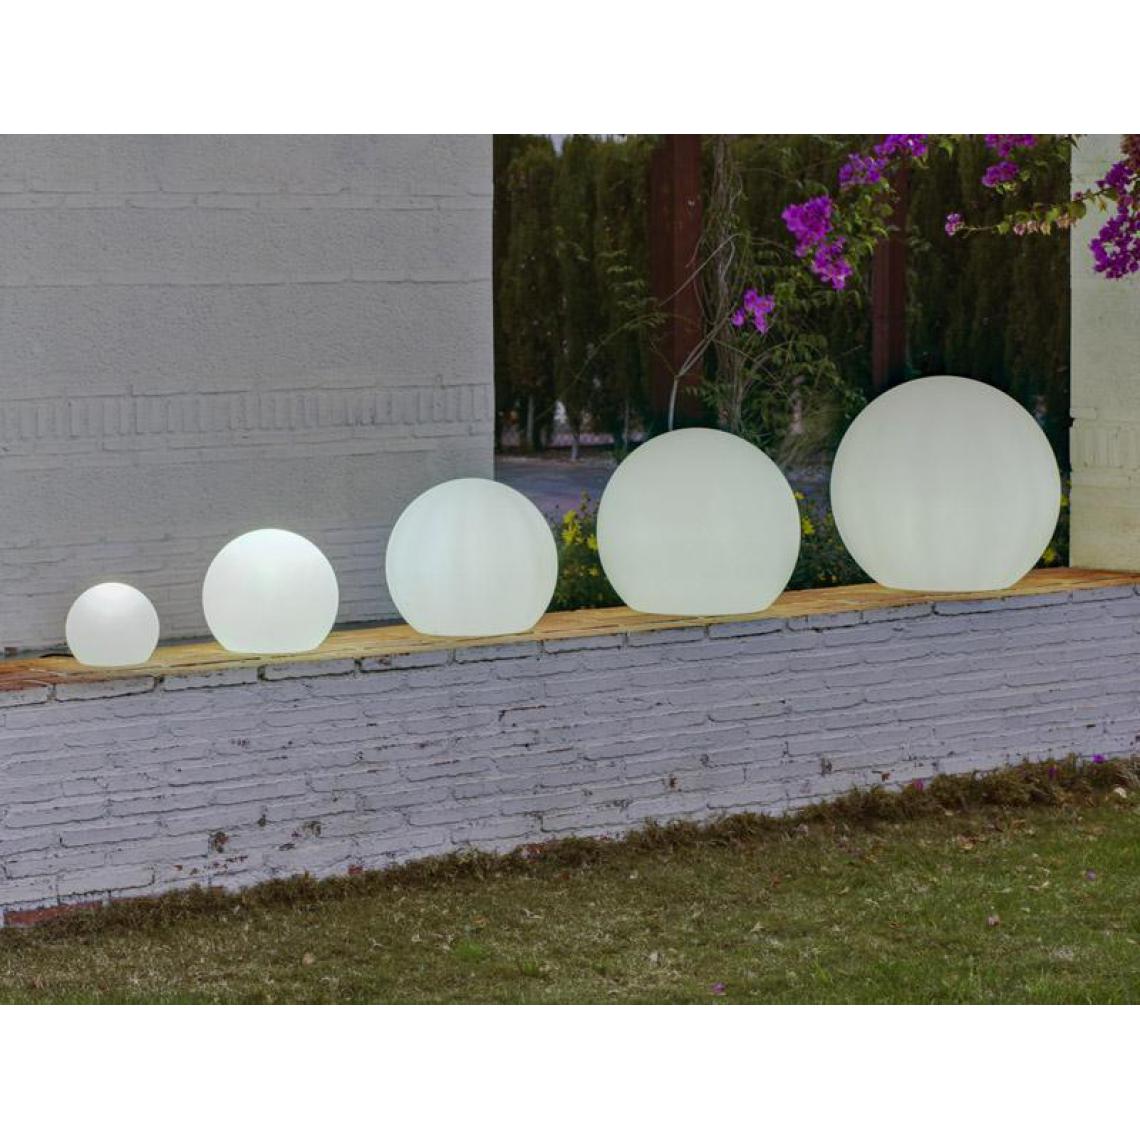 New Garden - Boule sphère lumineuse NEWGARDEN 50cm outdoor extérieur Solaire+Batterie rechargeable LED/RGB - Eclairage solaire